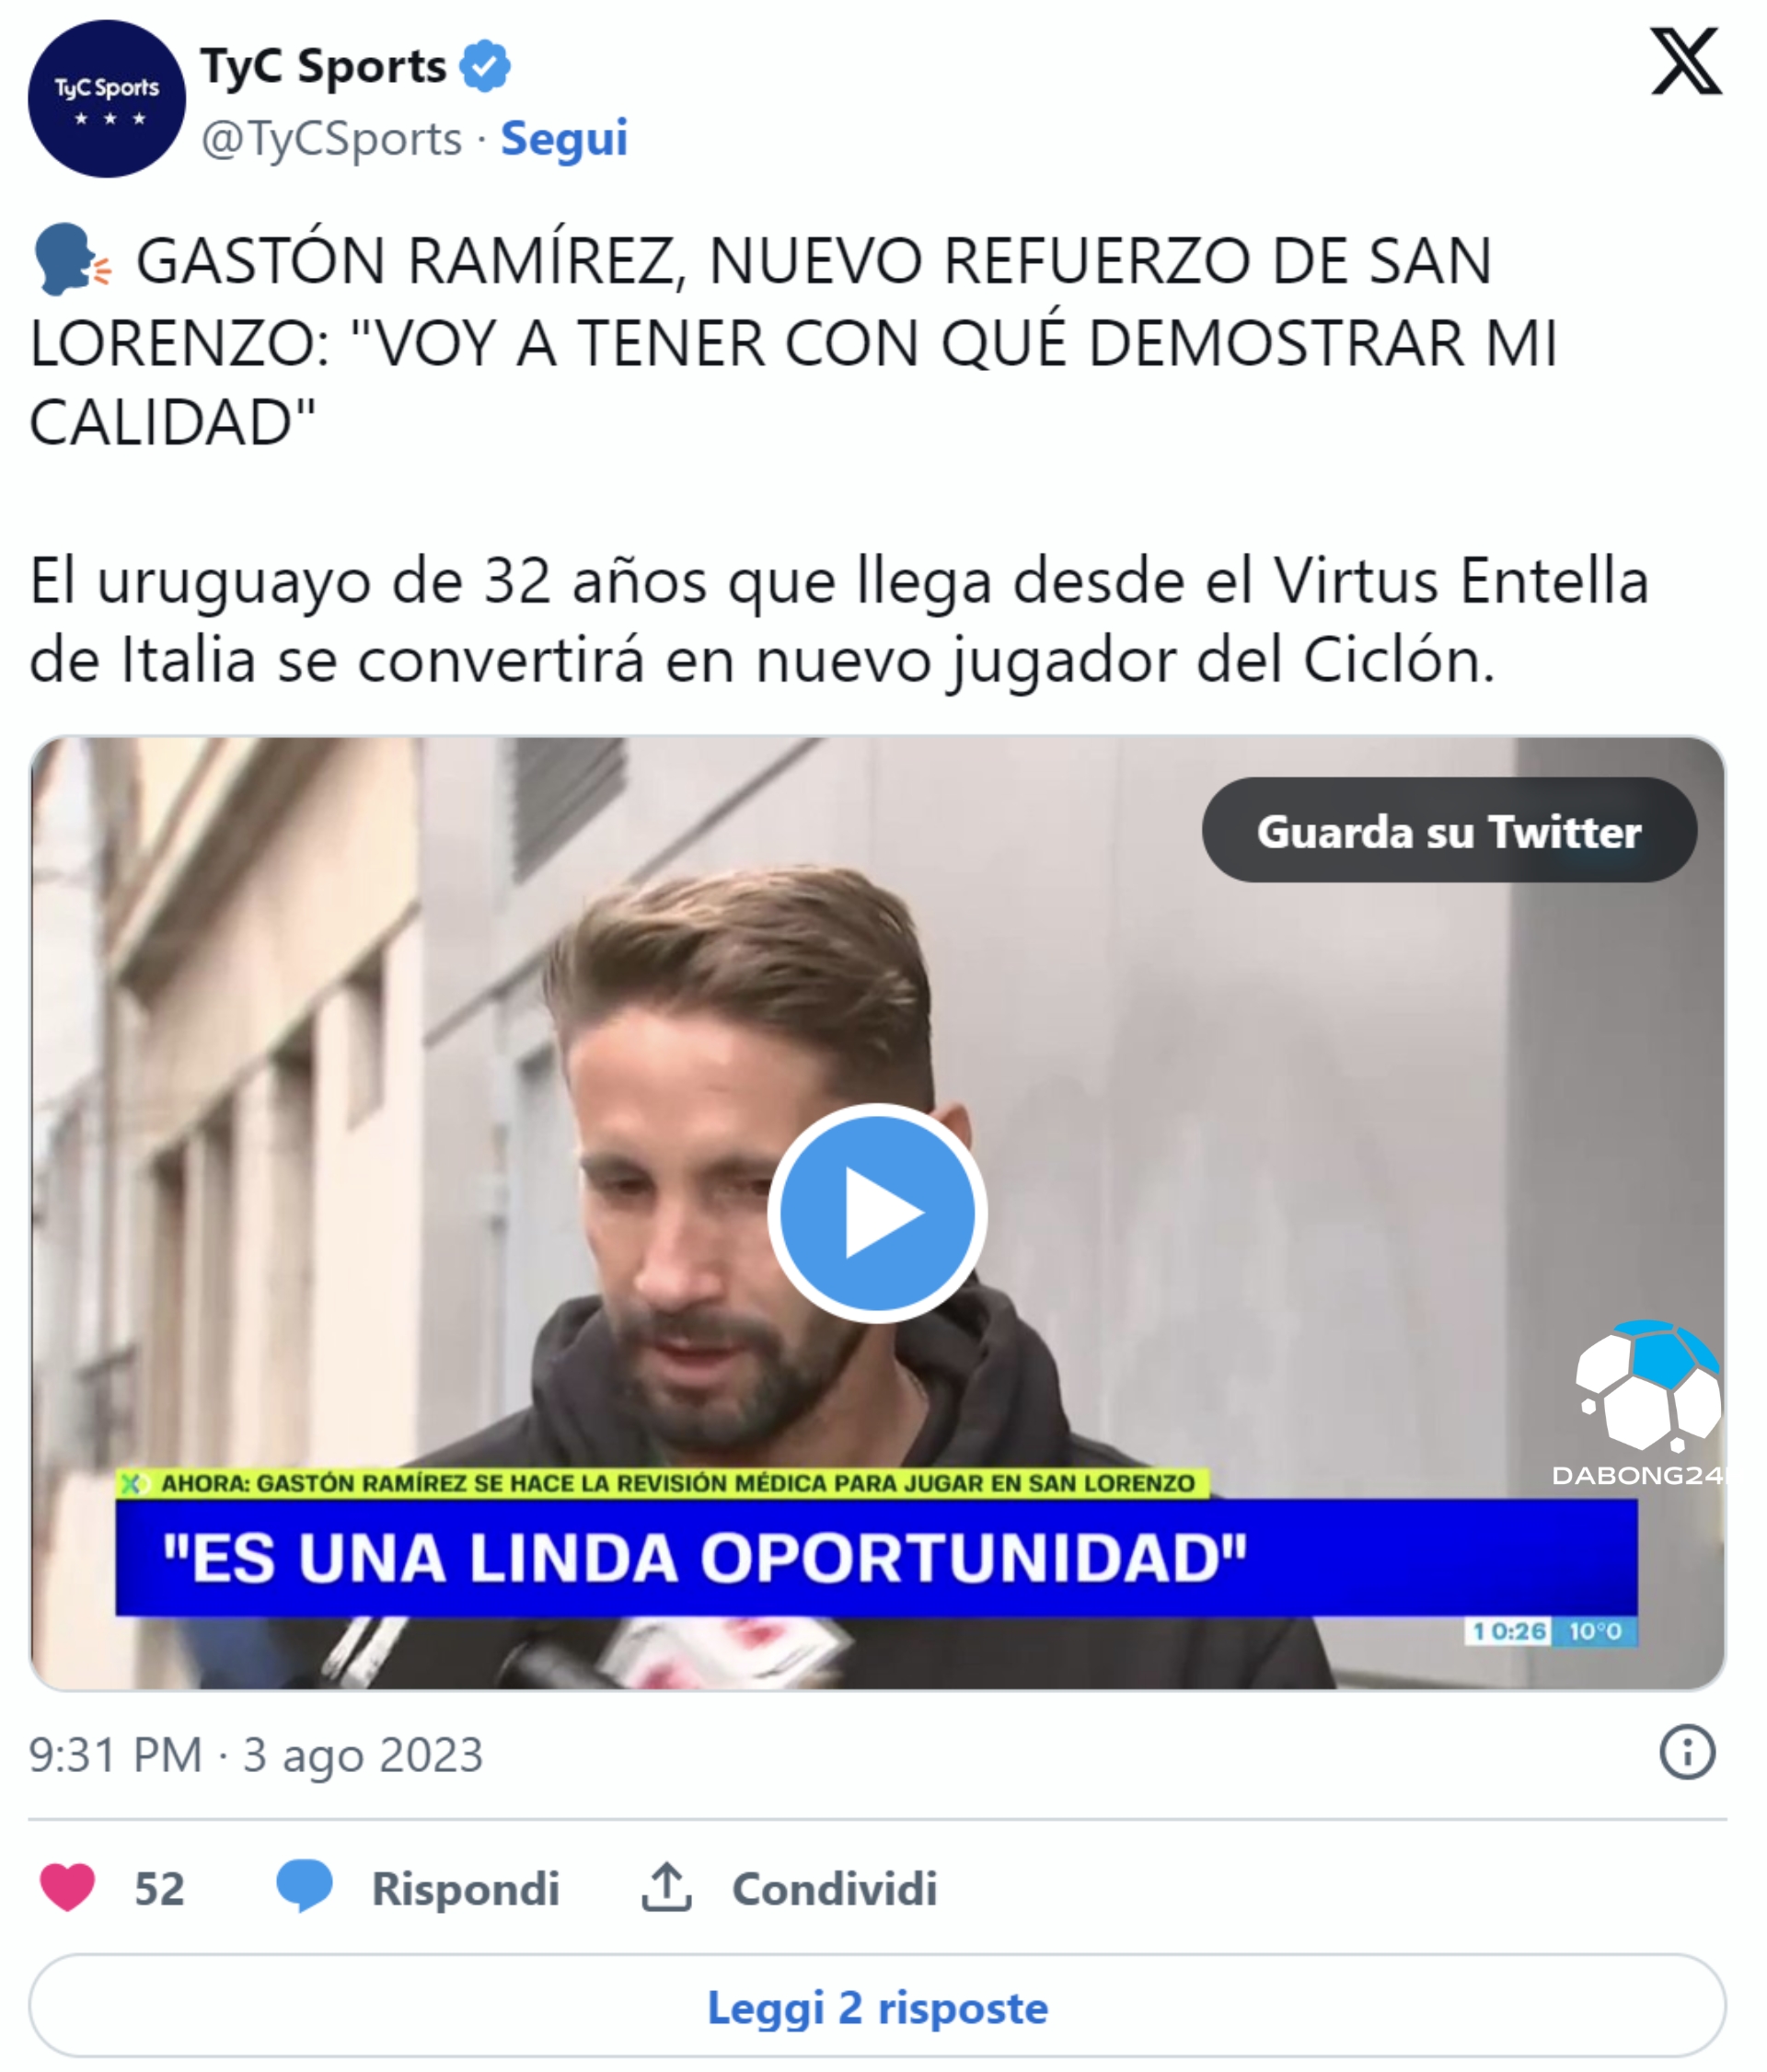 "Cơ hội lớn" - Gaston Ramirez đến San Lorenzo, tiền vệ đã có mặt tại Buenos Aires - 2